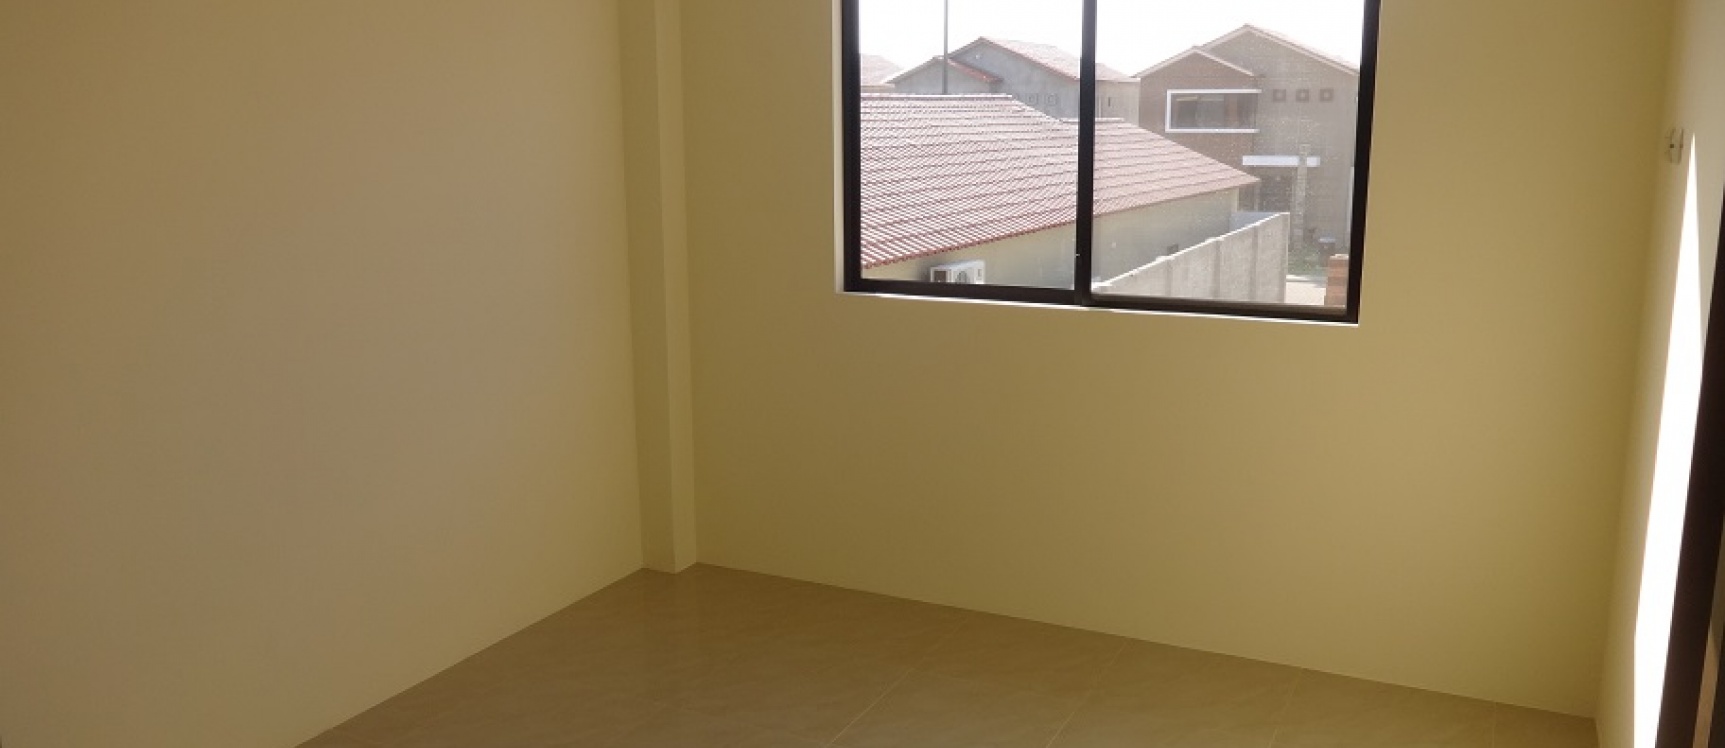 GeoBienes - Ciudad Celeste casa en venta con 5 dormitorios en Samborondón - Plusvalia Guayaquil Casas de venta y alquiler Inmobiliaria Ecuador